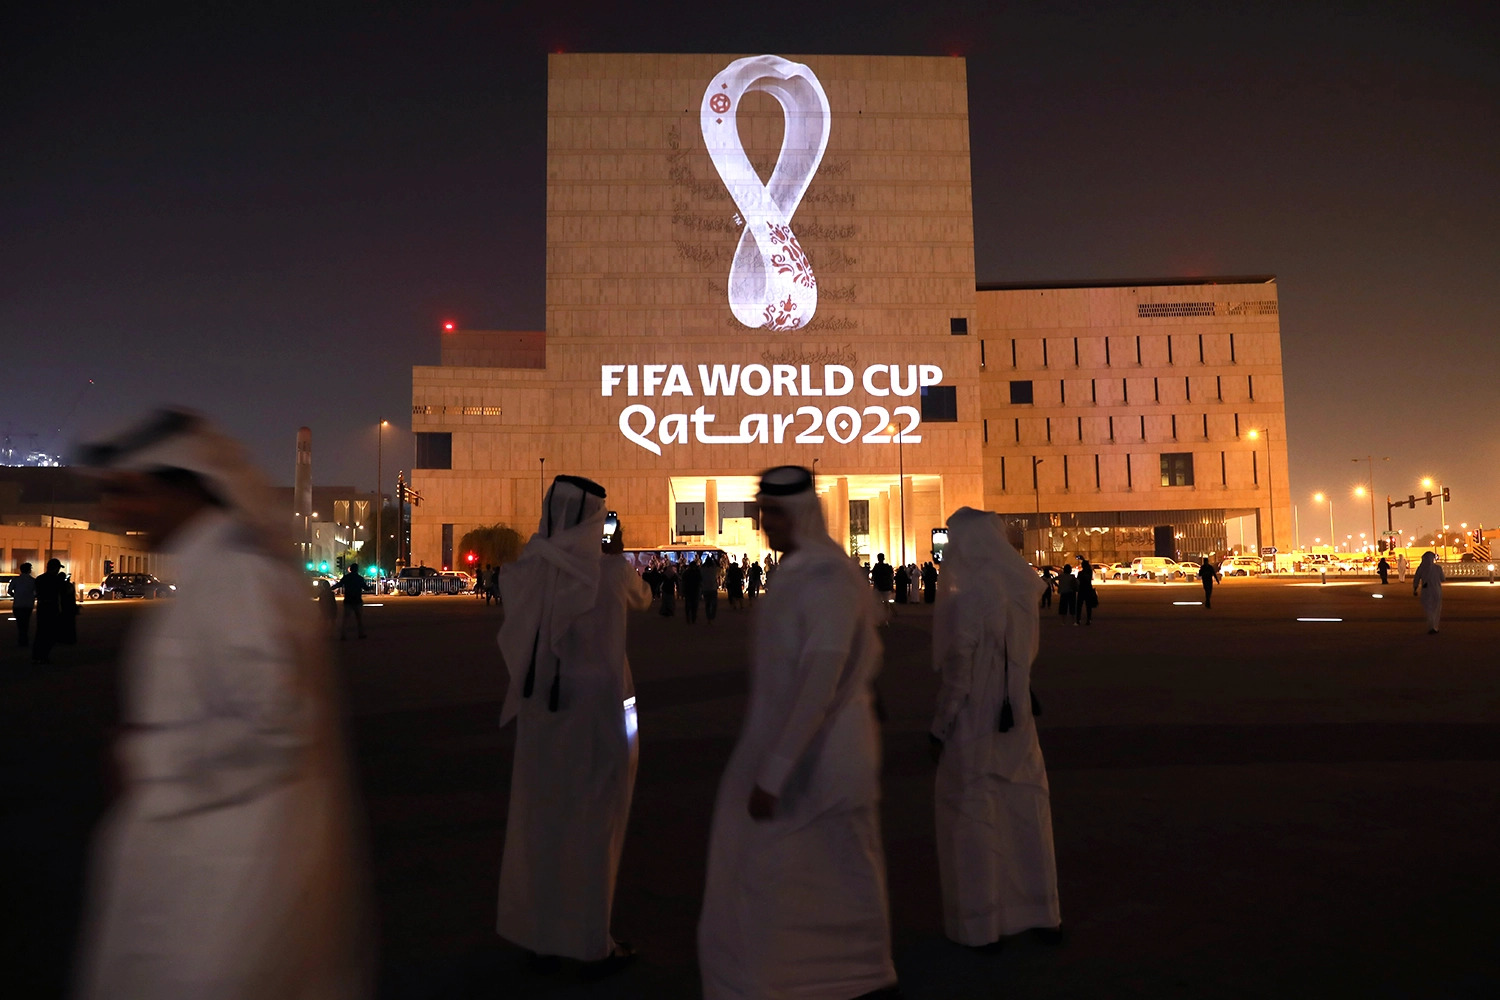 Người dân Qatar có quyền tự hào khi nước nhà đang tổ chức một kỳ World Cup độc đáo (ảnh: ALJ)